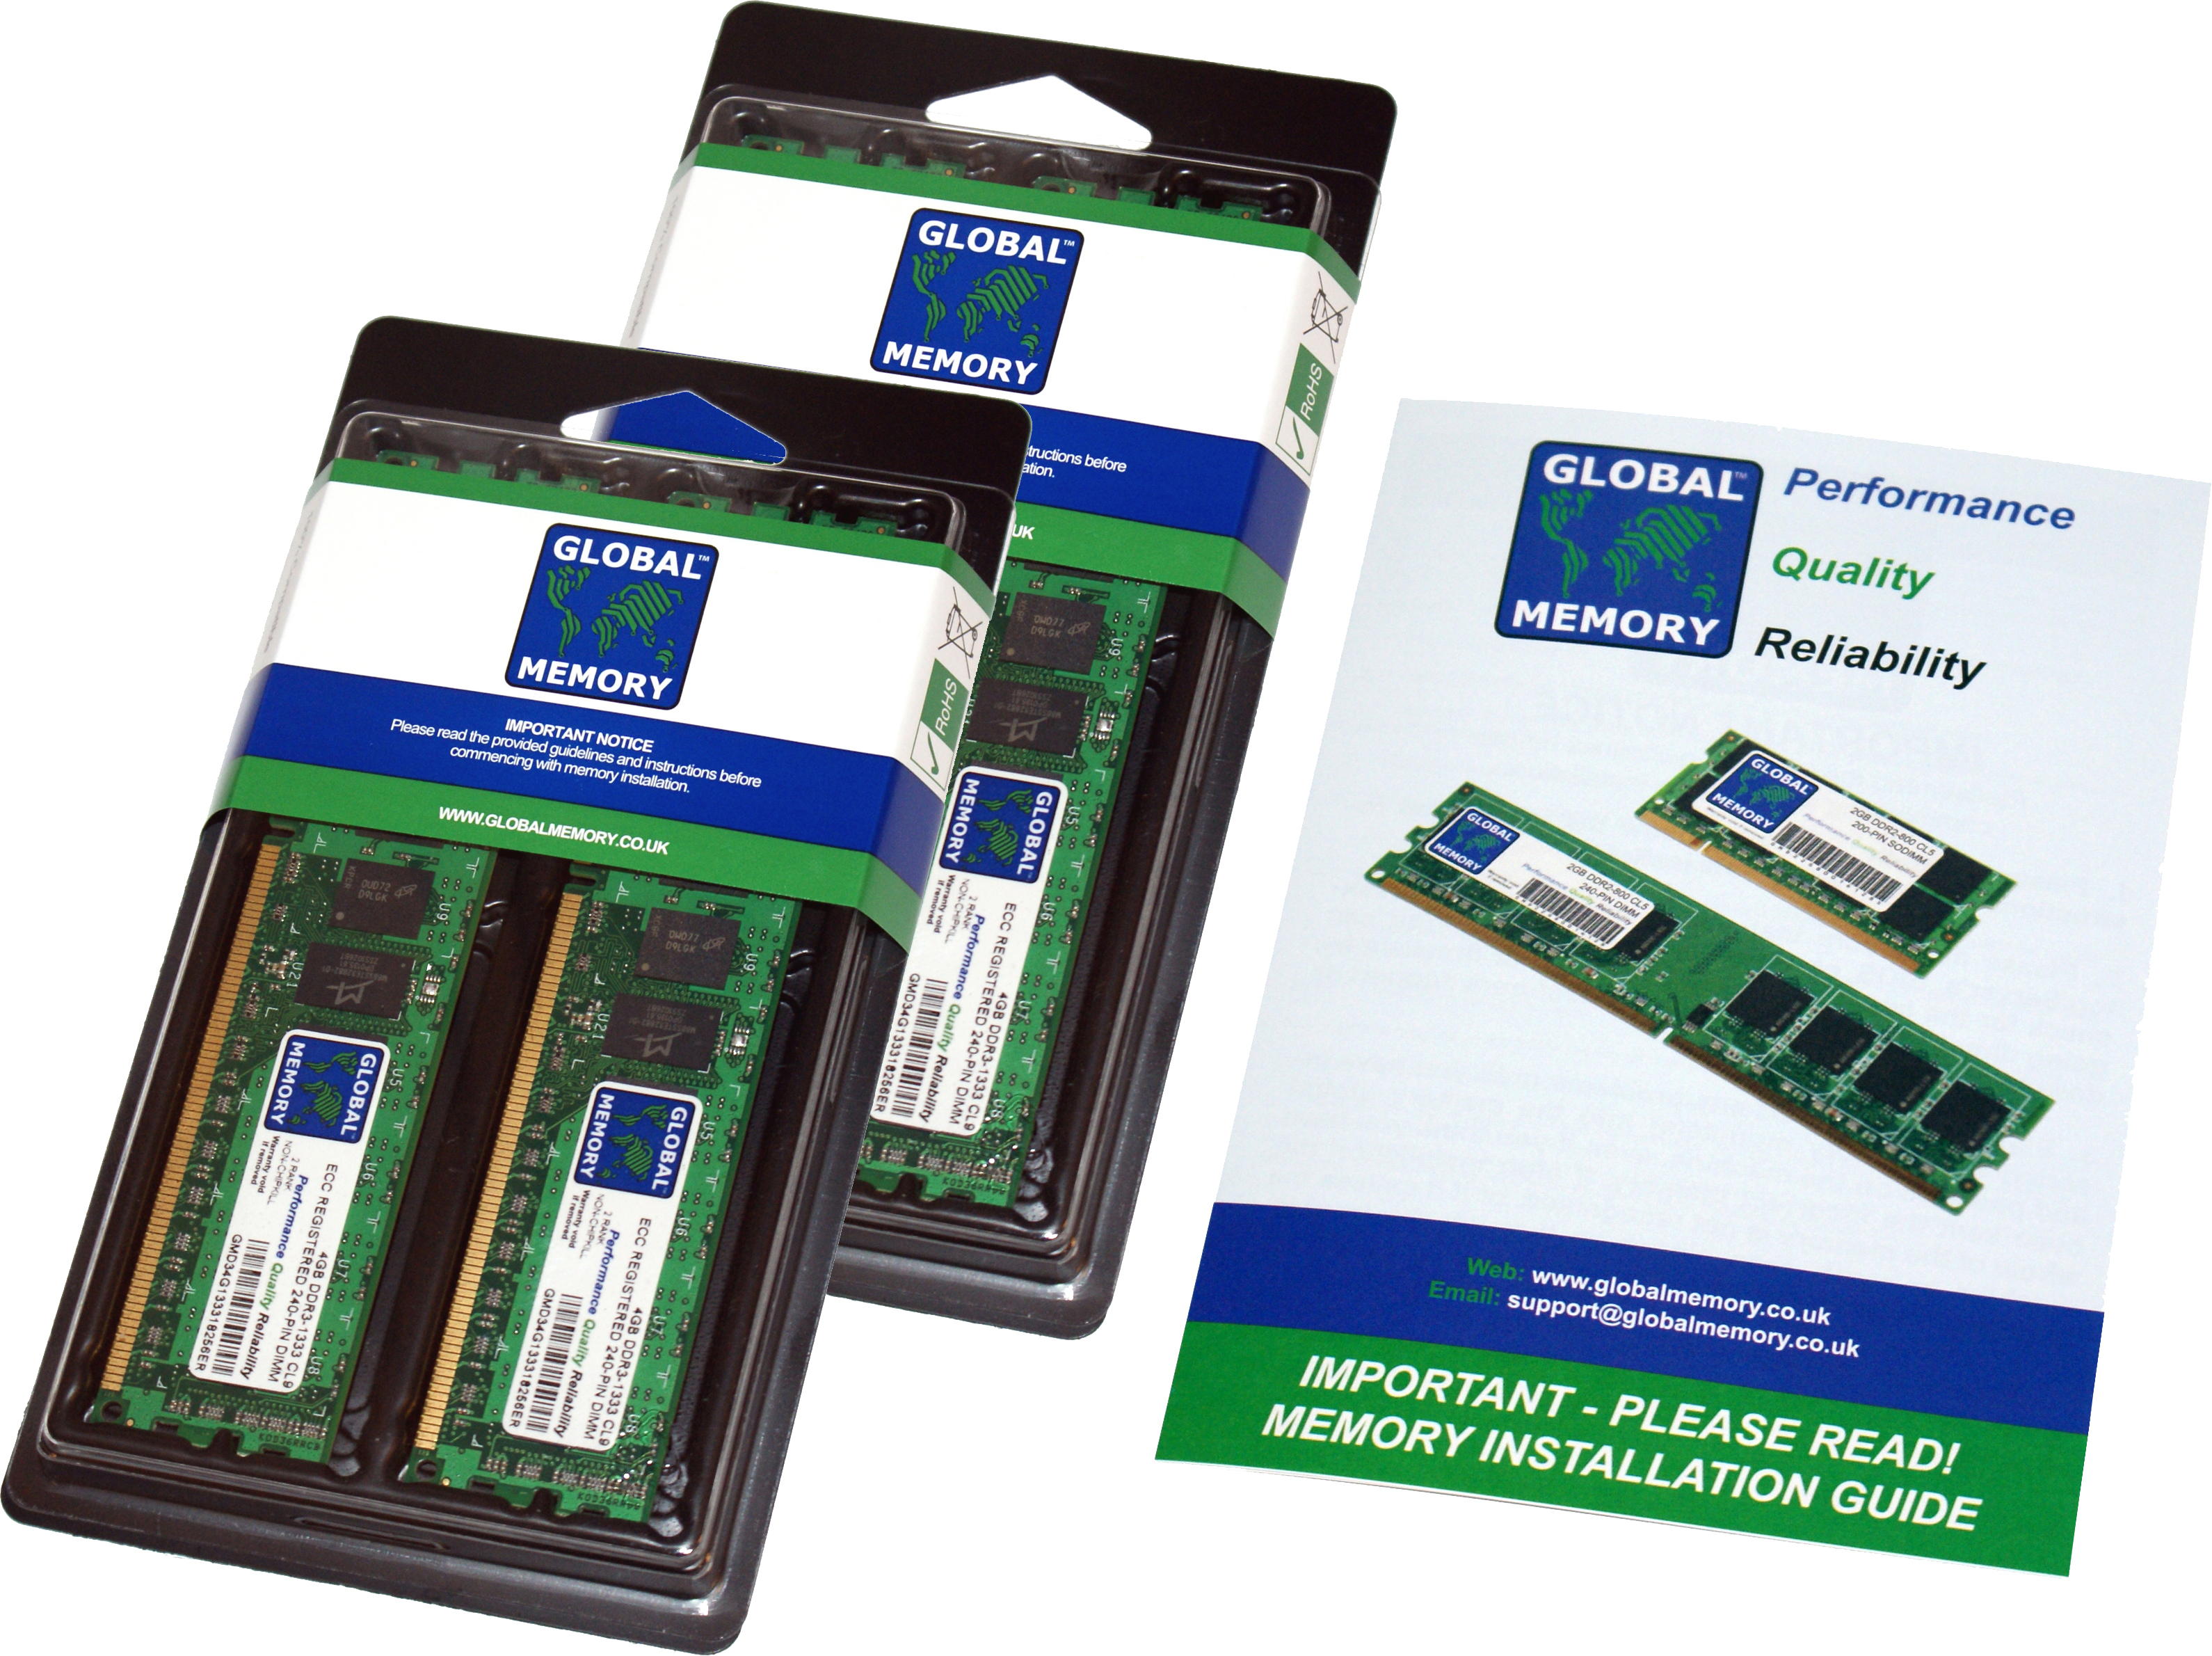 64GB (4 x 16GB) DDR4 2933MHz PC4-23400 288-PIN ECC REGISTERED DIMM (RDIMM) MEMORY RAM KIT FOR HEWLETT-PACKARD SERVERS/WORKSTATIONS (8 RANK KIT CHIPKILL)